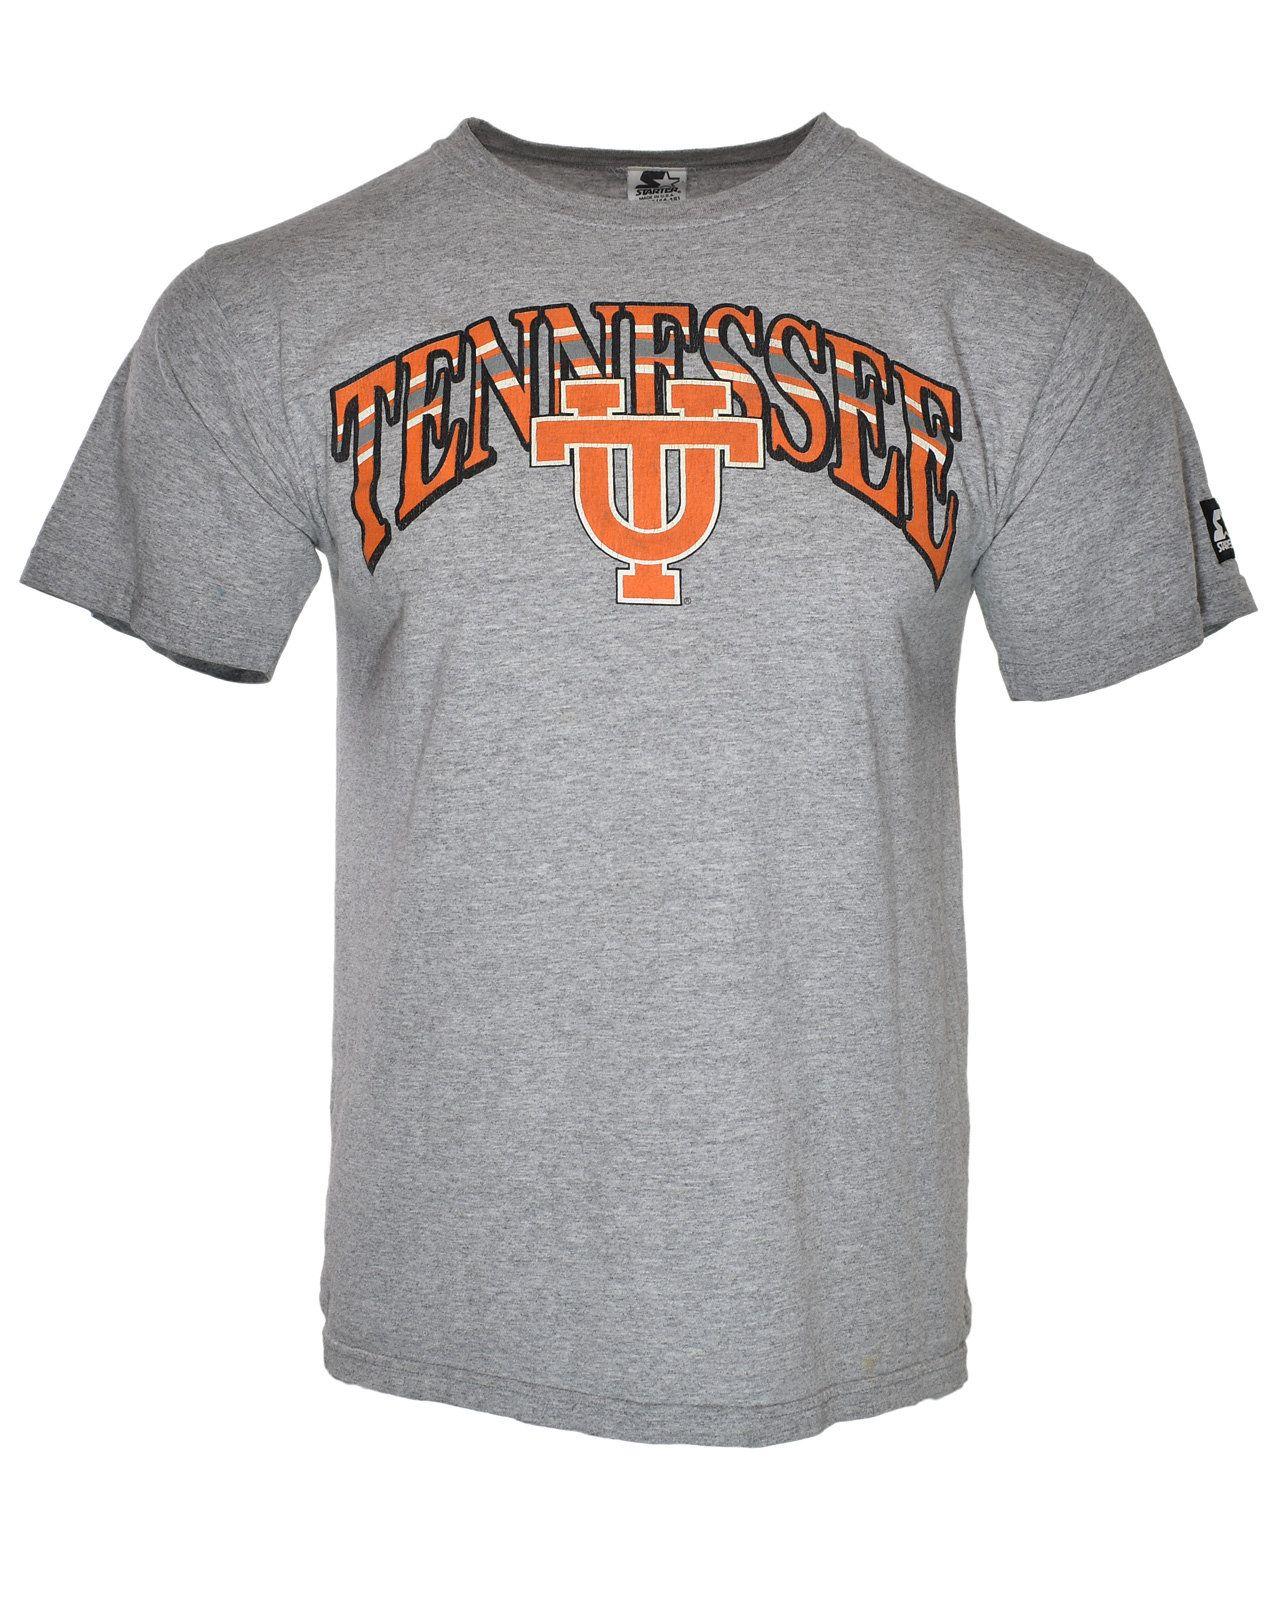 Retro Sports Tennessee Orange Logo - Vintage Tennessee Volunteers 90's UT Vols Starter Athletic